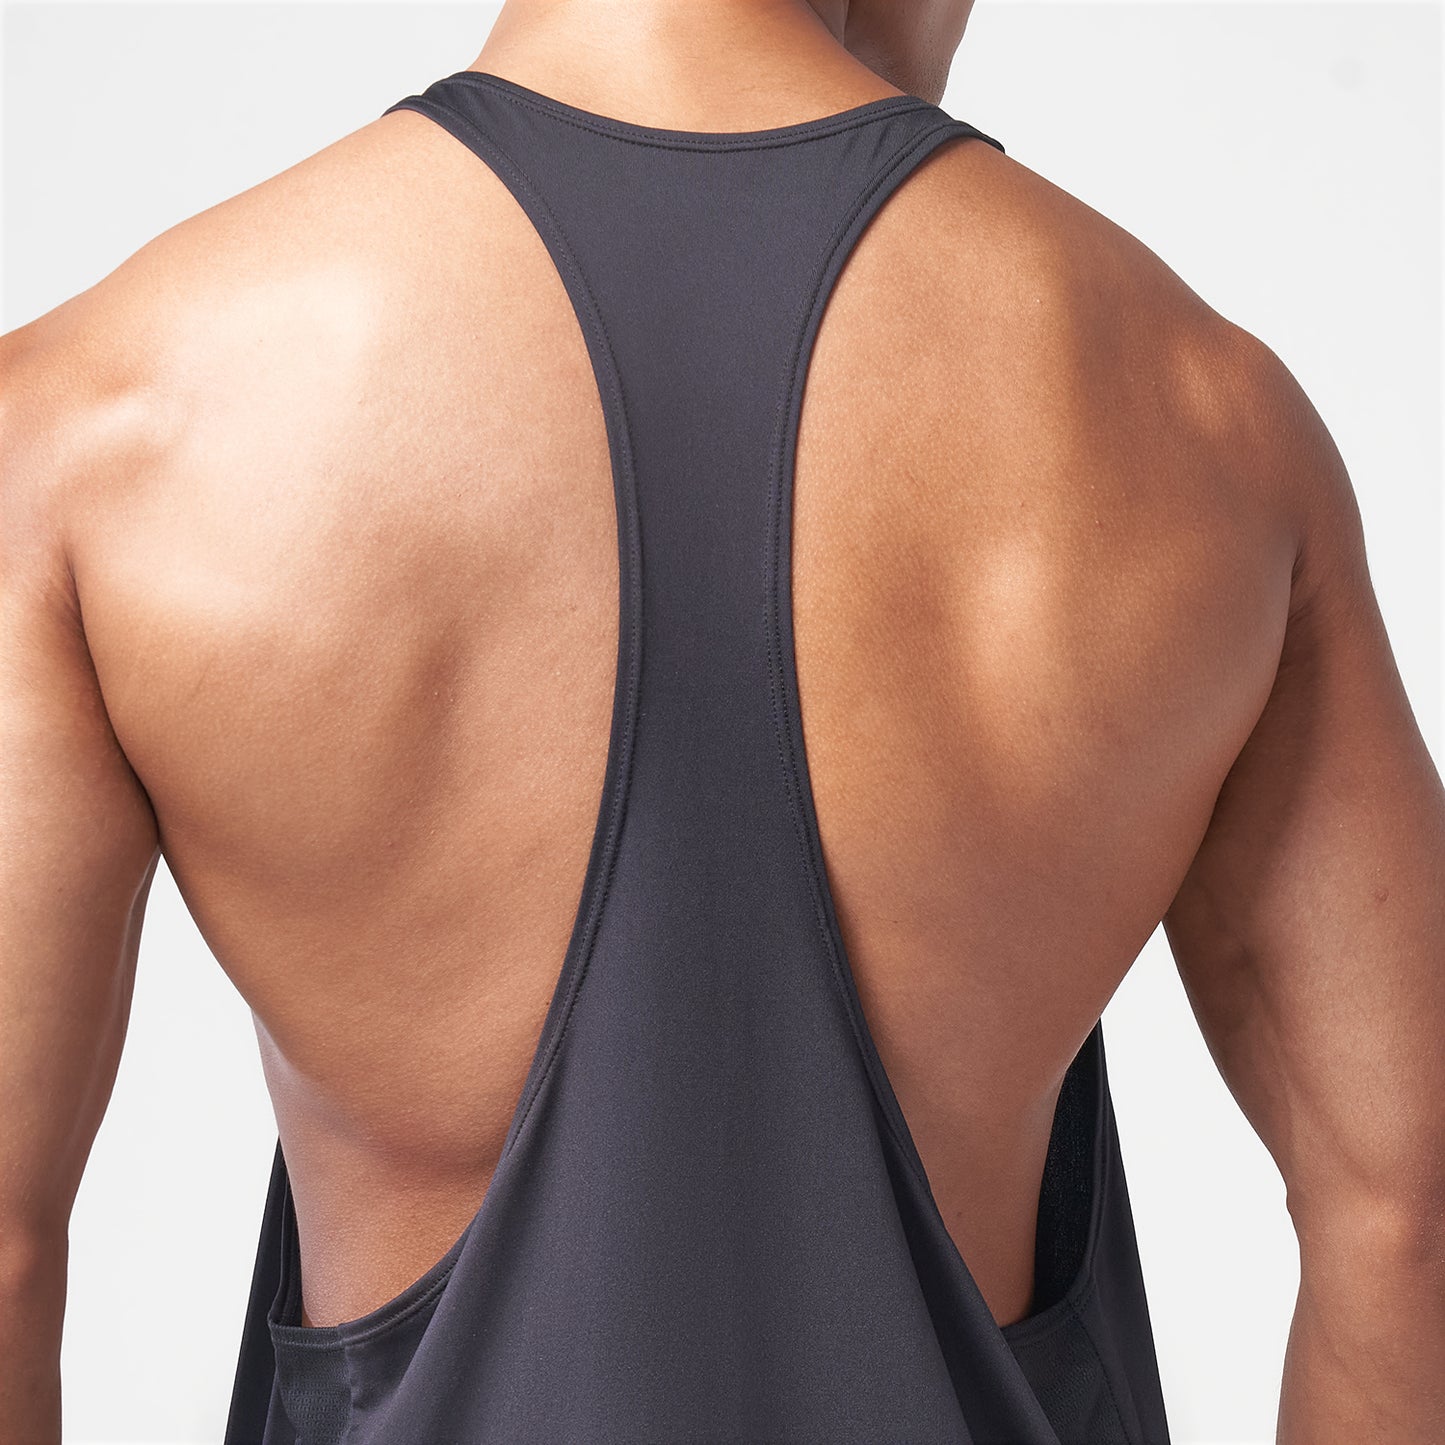 squatwolf-gym-wear-essential-gym-stringer-black-stringer-vests-for-men